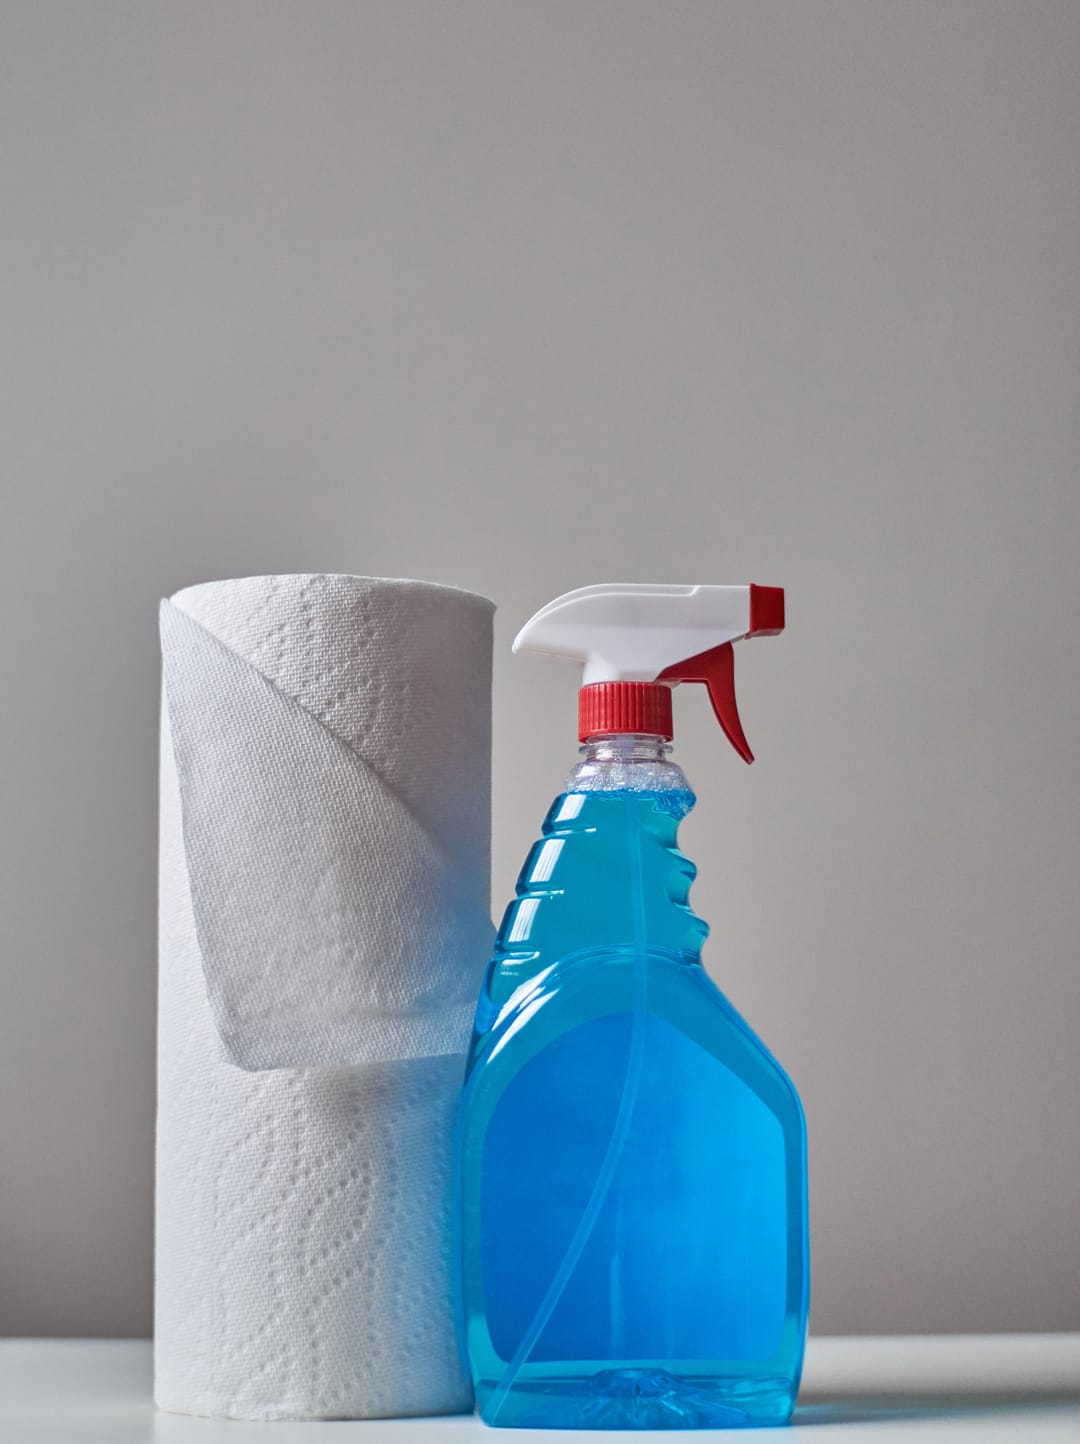 Los productos naturales menos toxicos para limpiar tu casa